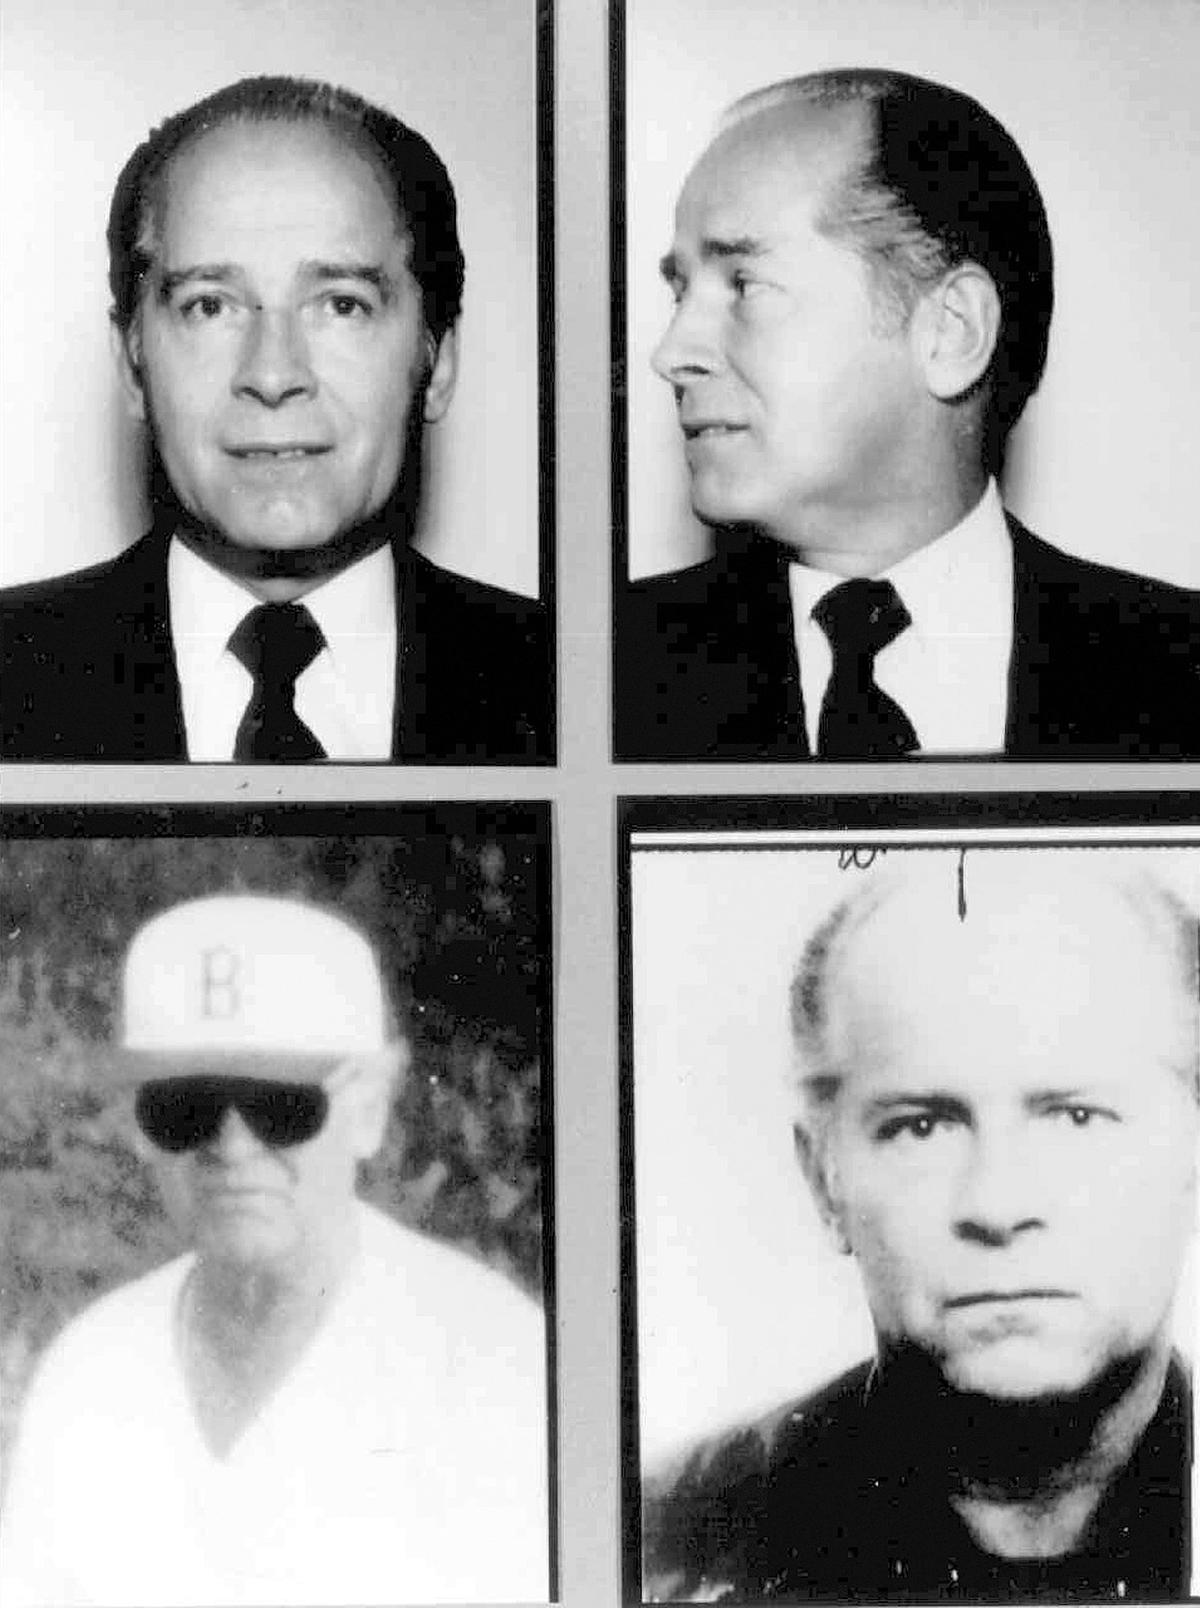 Massachusetts mobster James "Whitey" Bulger. (FBI via AP, File)